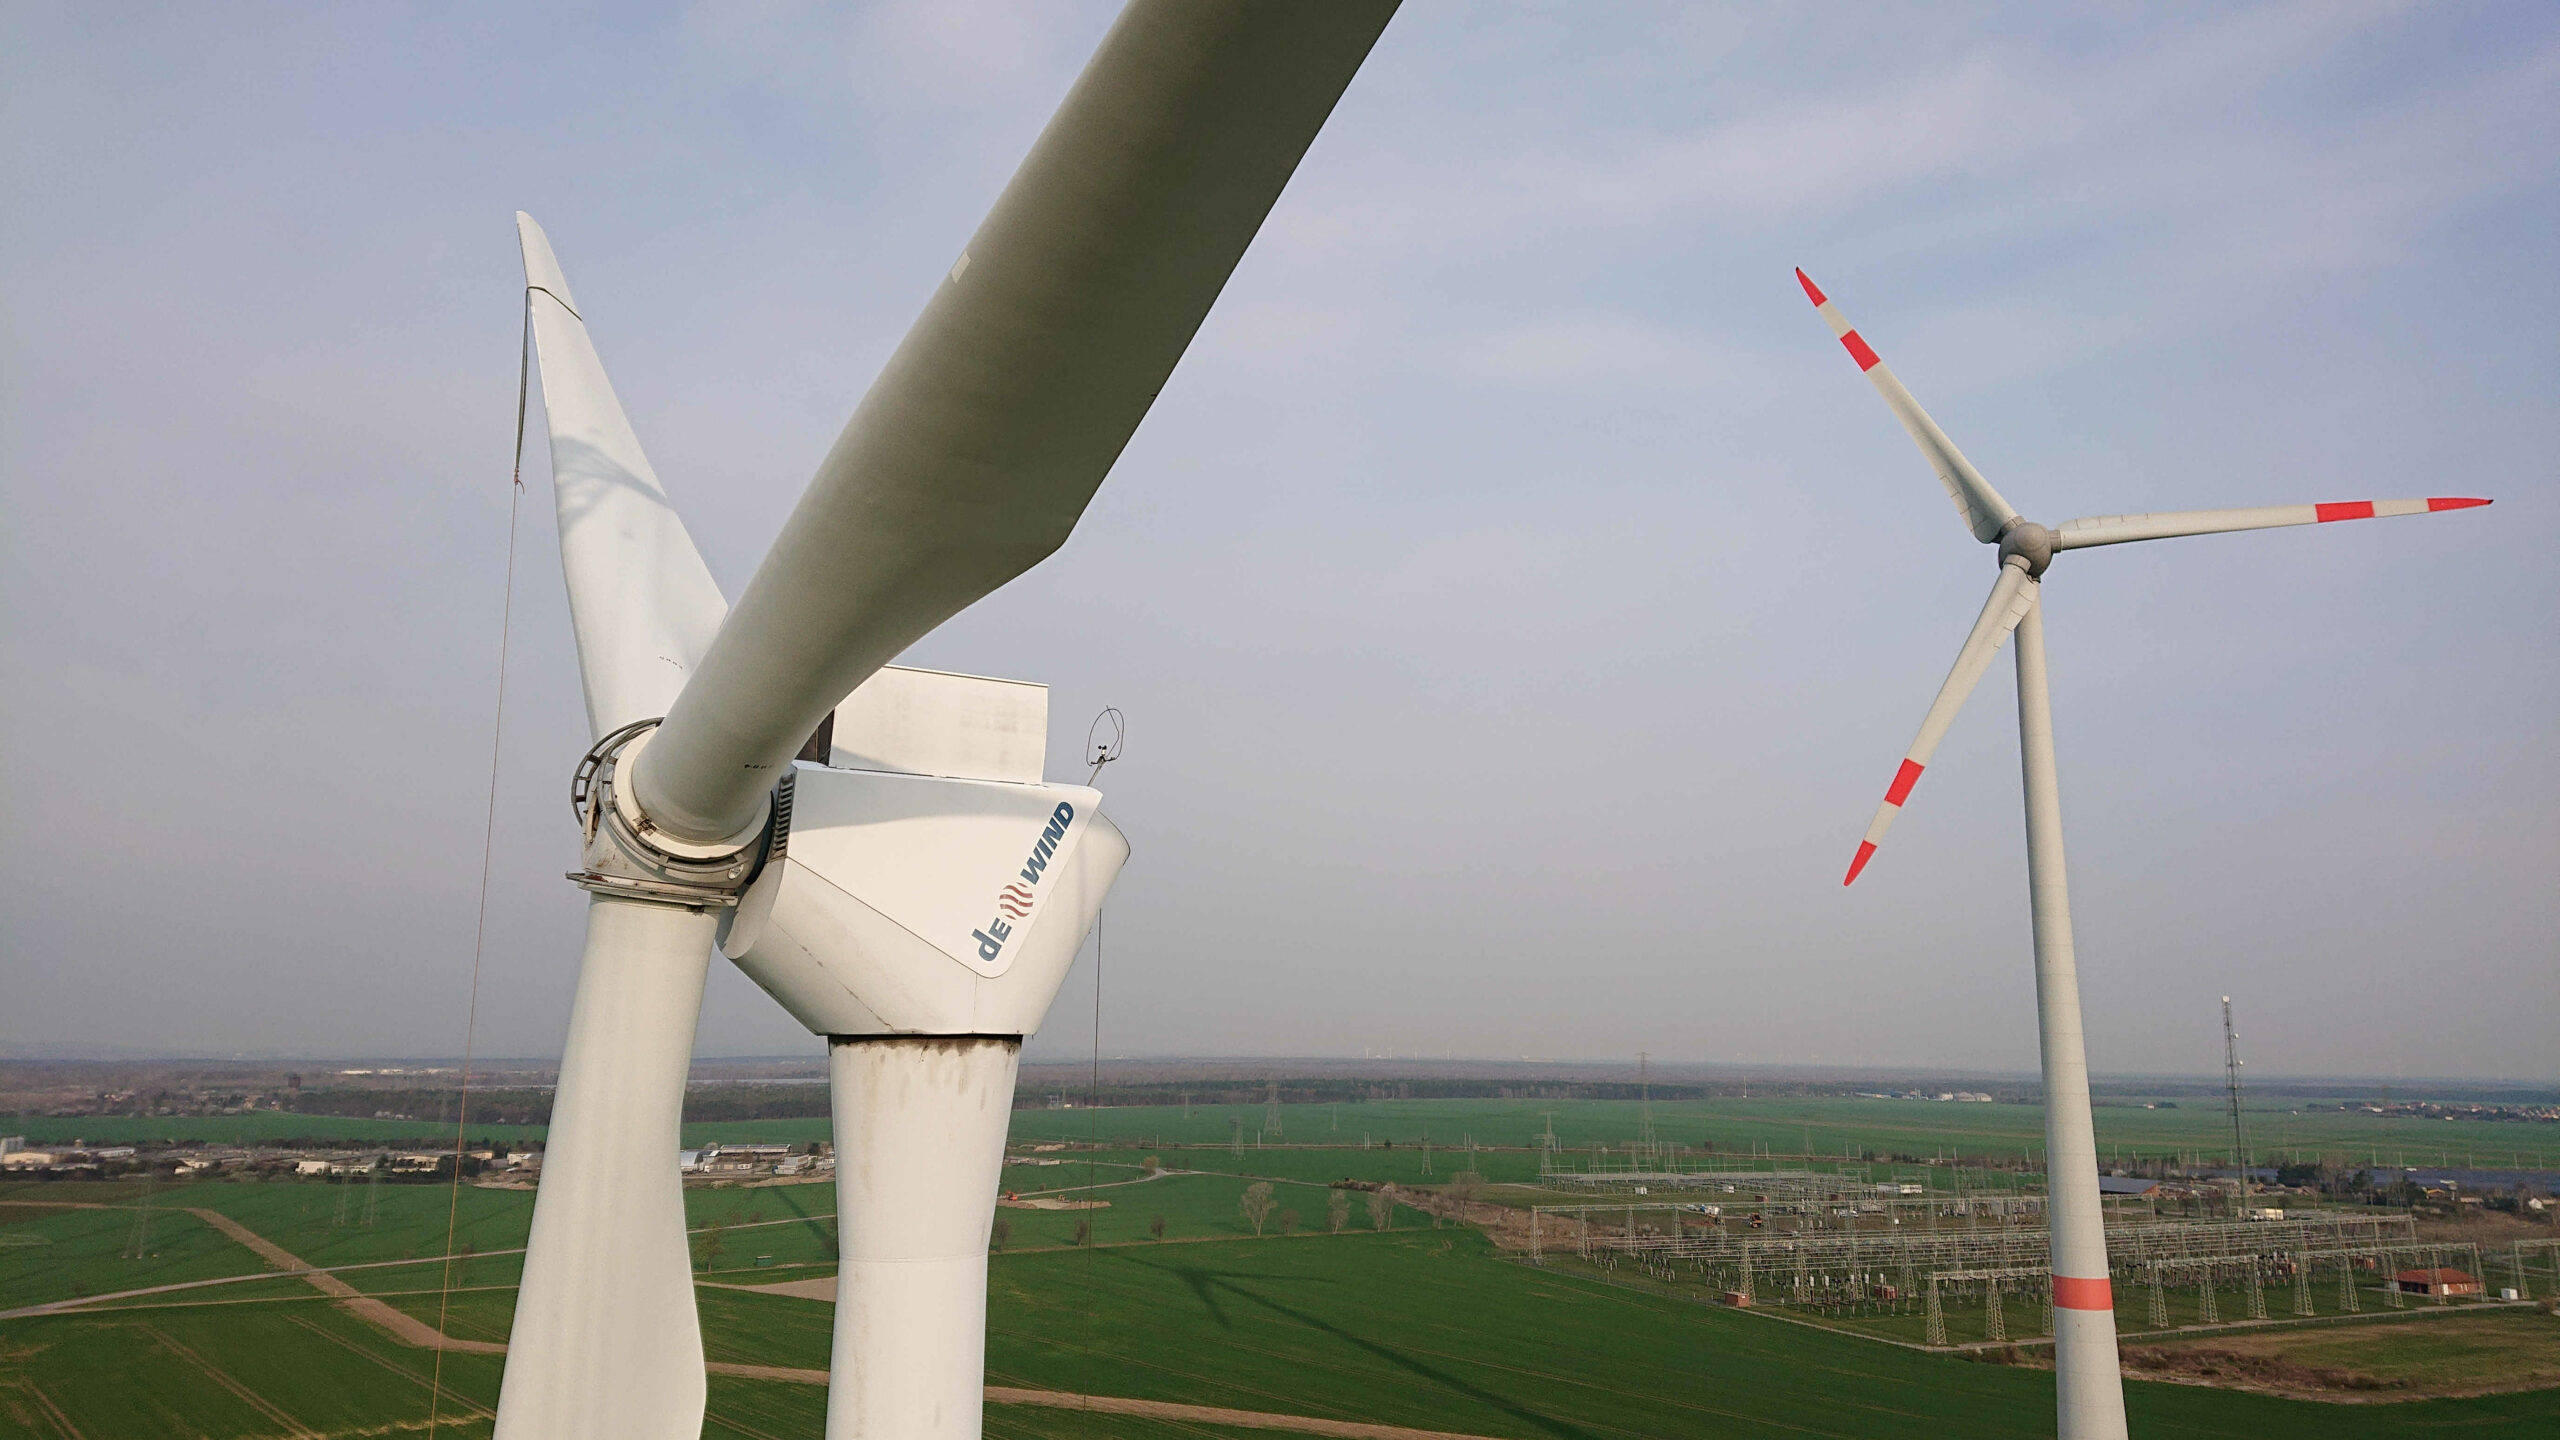 windenergie, windkraft, repowering, windpark, streumen, dewind, enercon